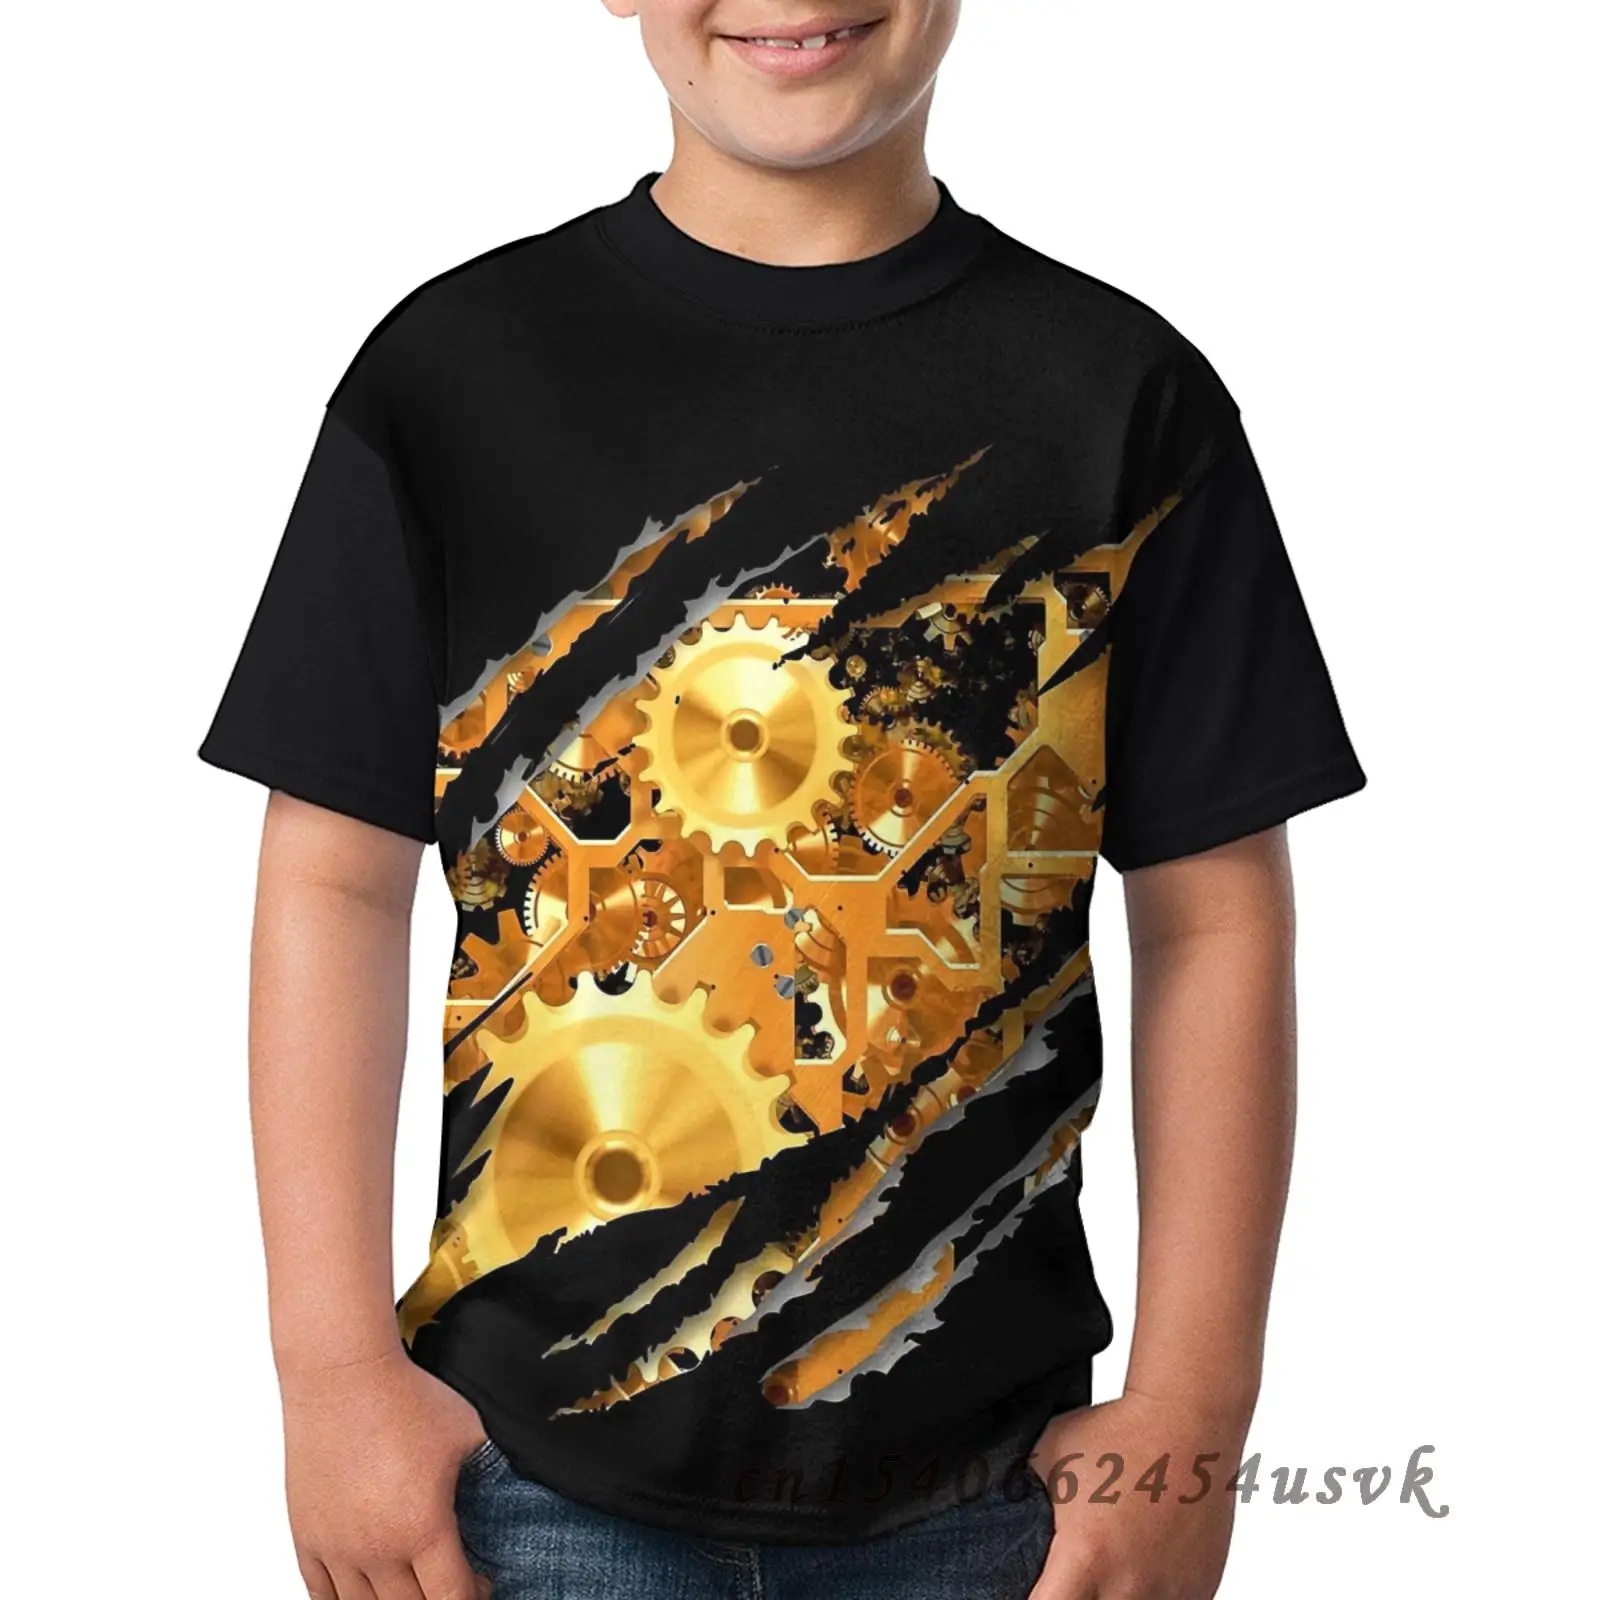 Винтажная футболка в стиле стимпанк с латунными заводными колышками и колесами